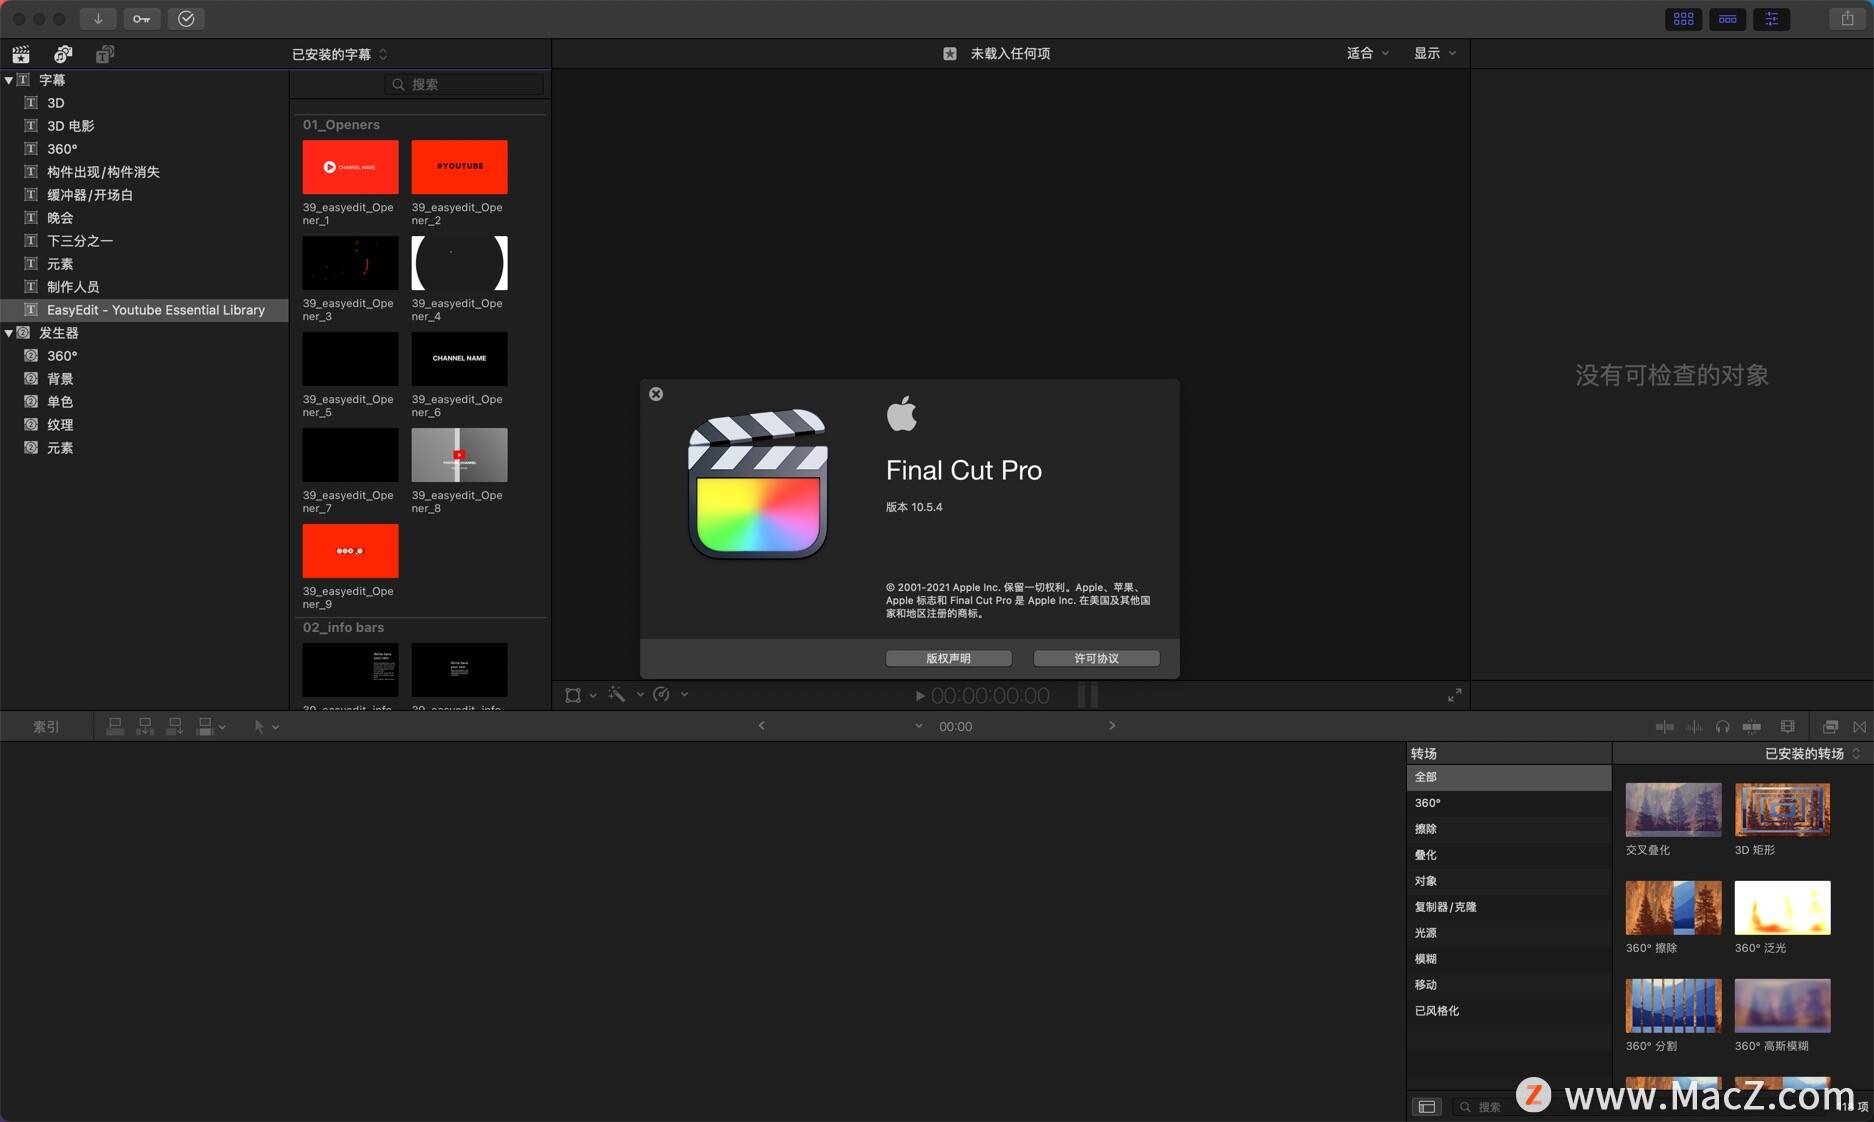 macfcpx 视频编辑工具 - mac OS 平台上最好的视频编辑软件